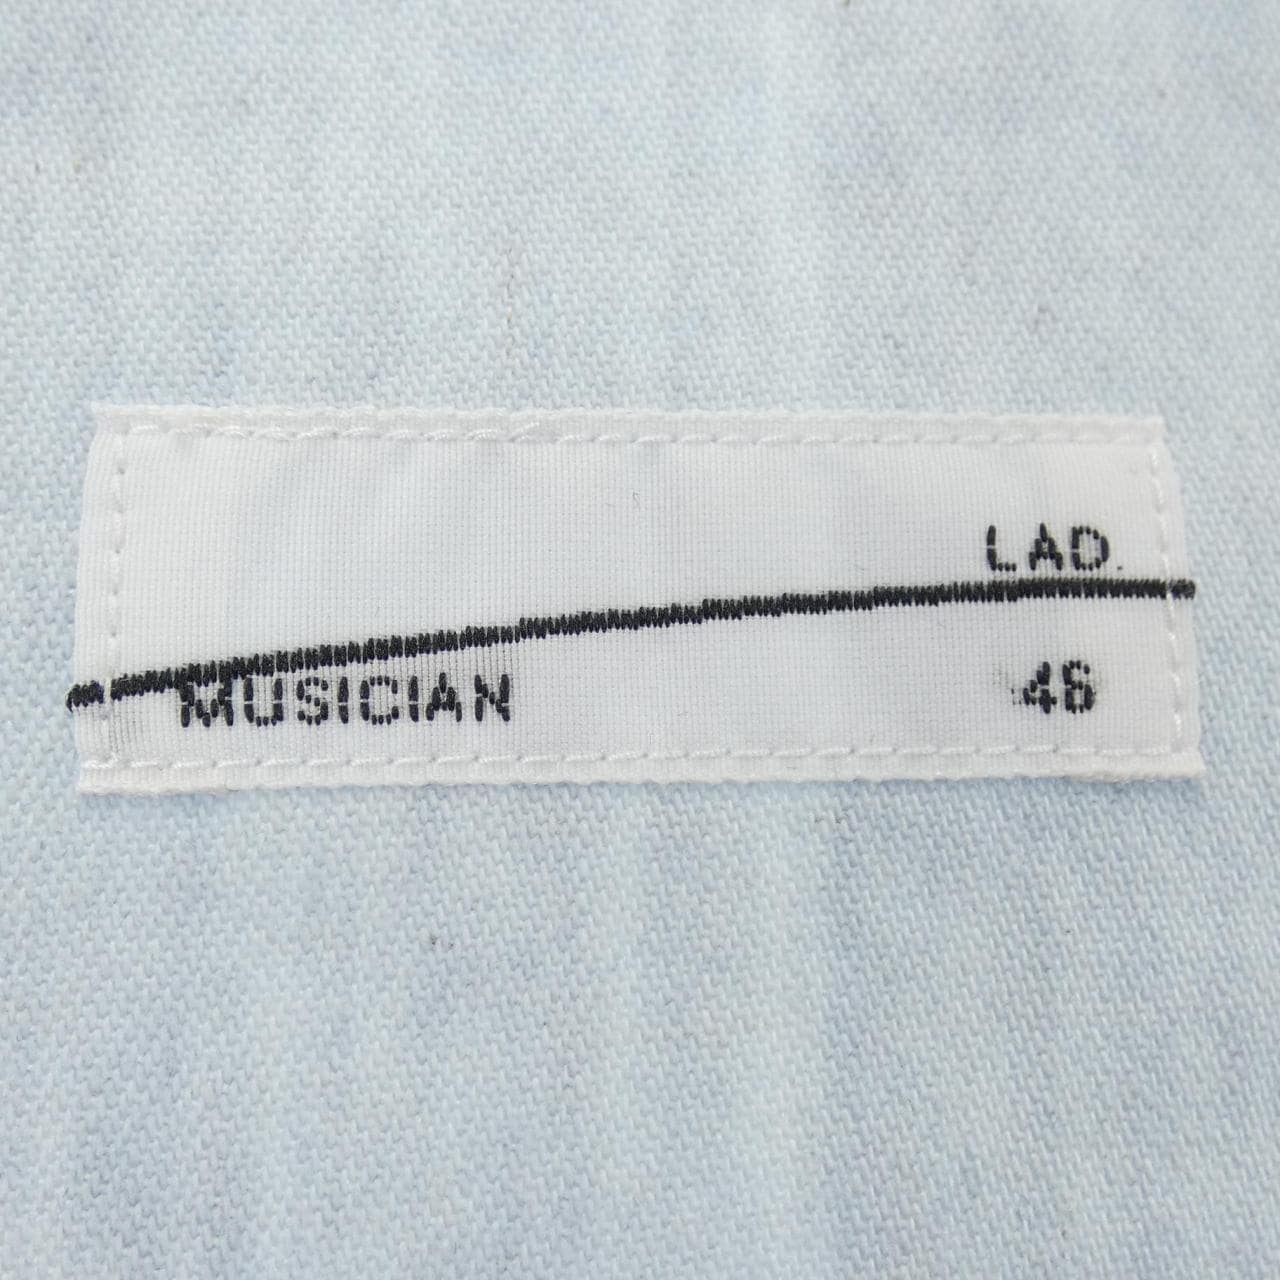 Rad musician LAD MUSICIAN jacket